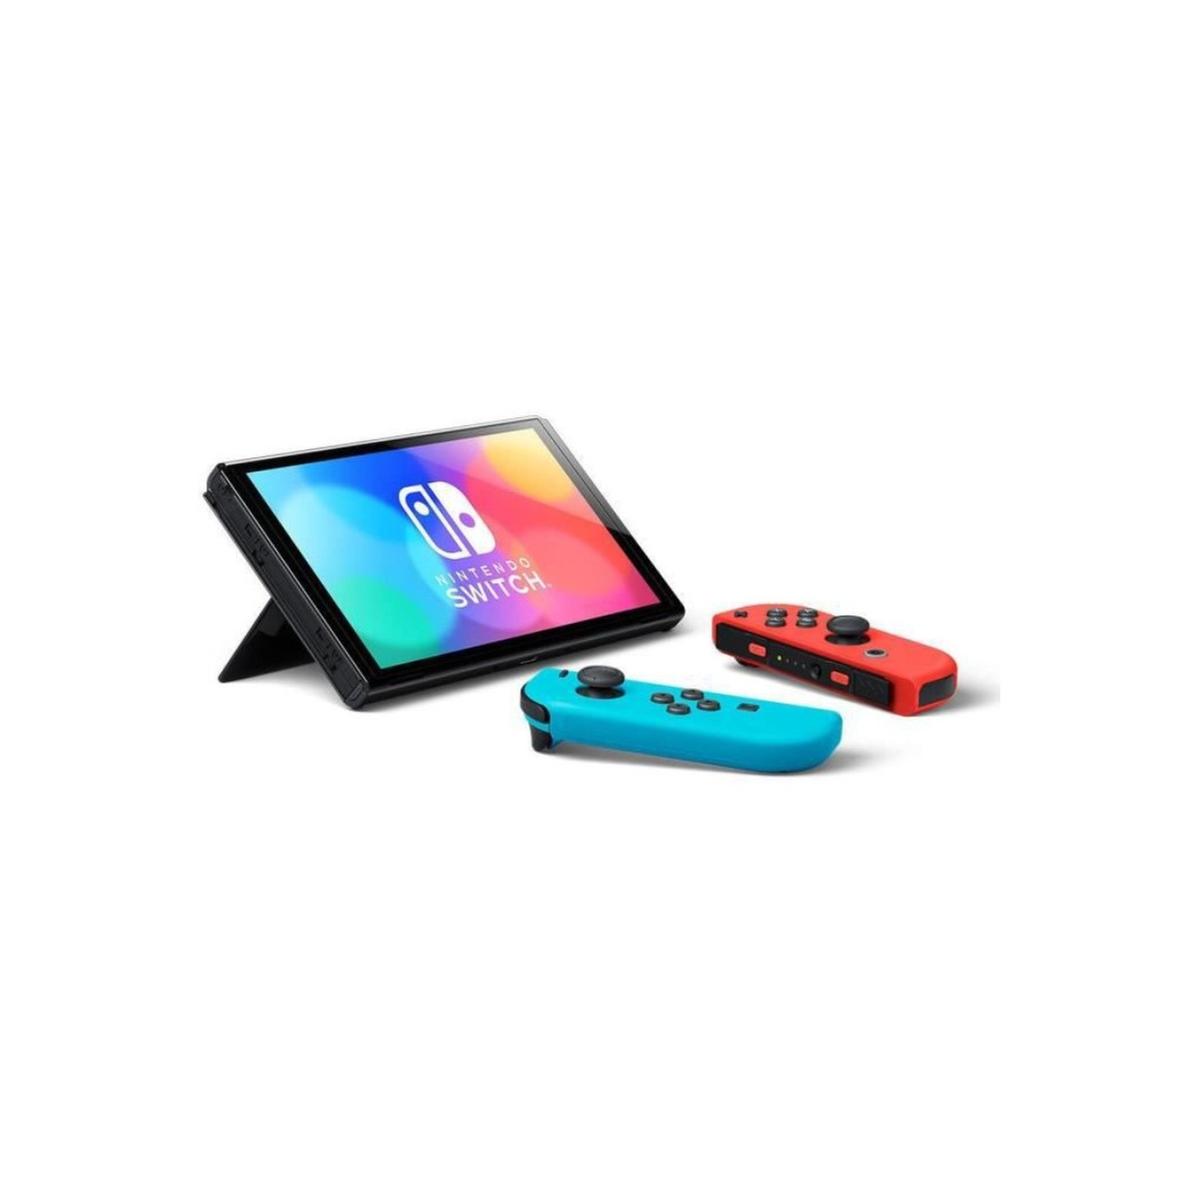 Nintendo Switch - Consola versión OLED rojo/azul | Hardware | Toys"R"Us  España